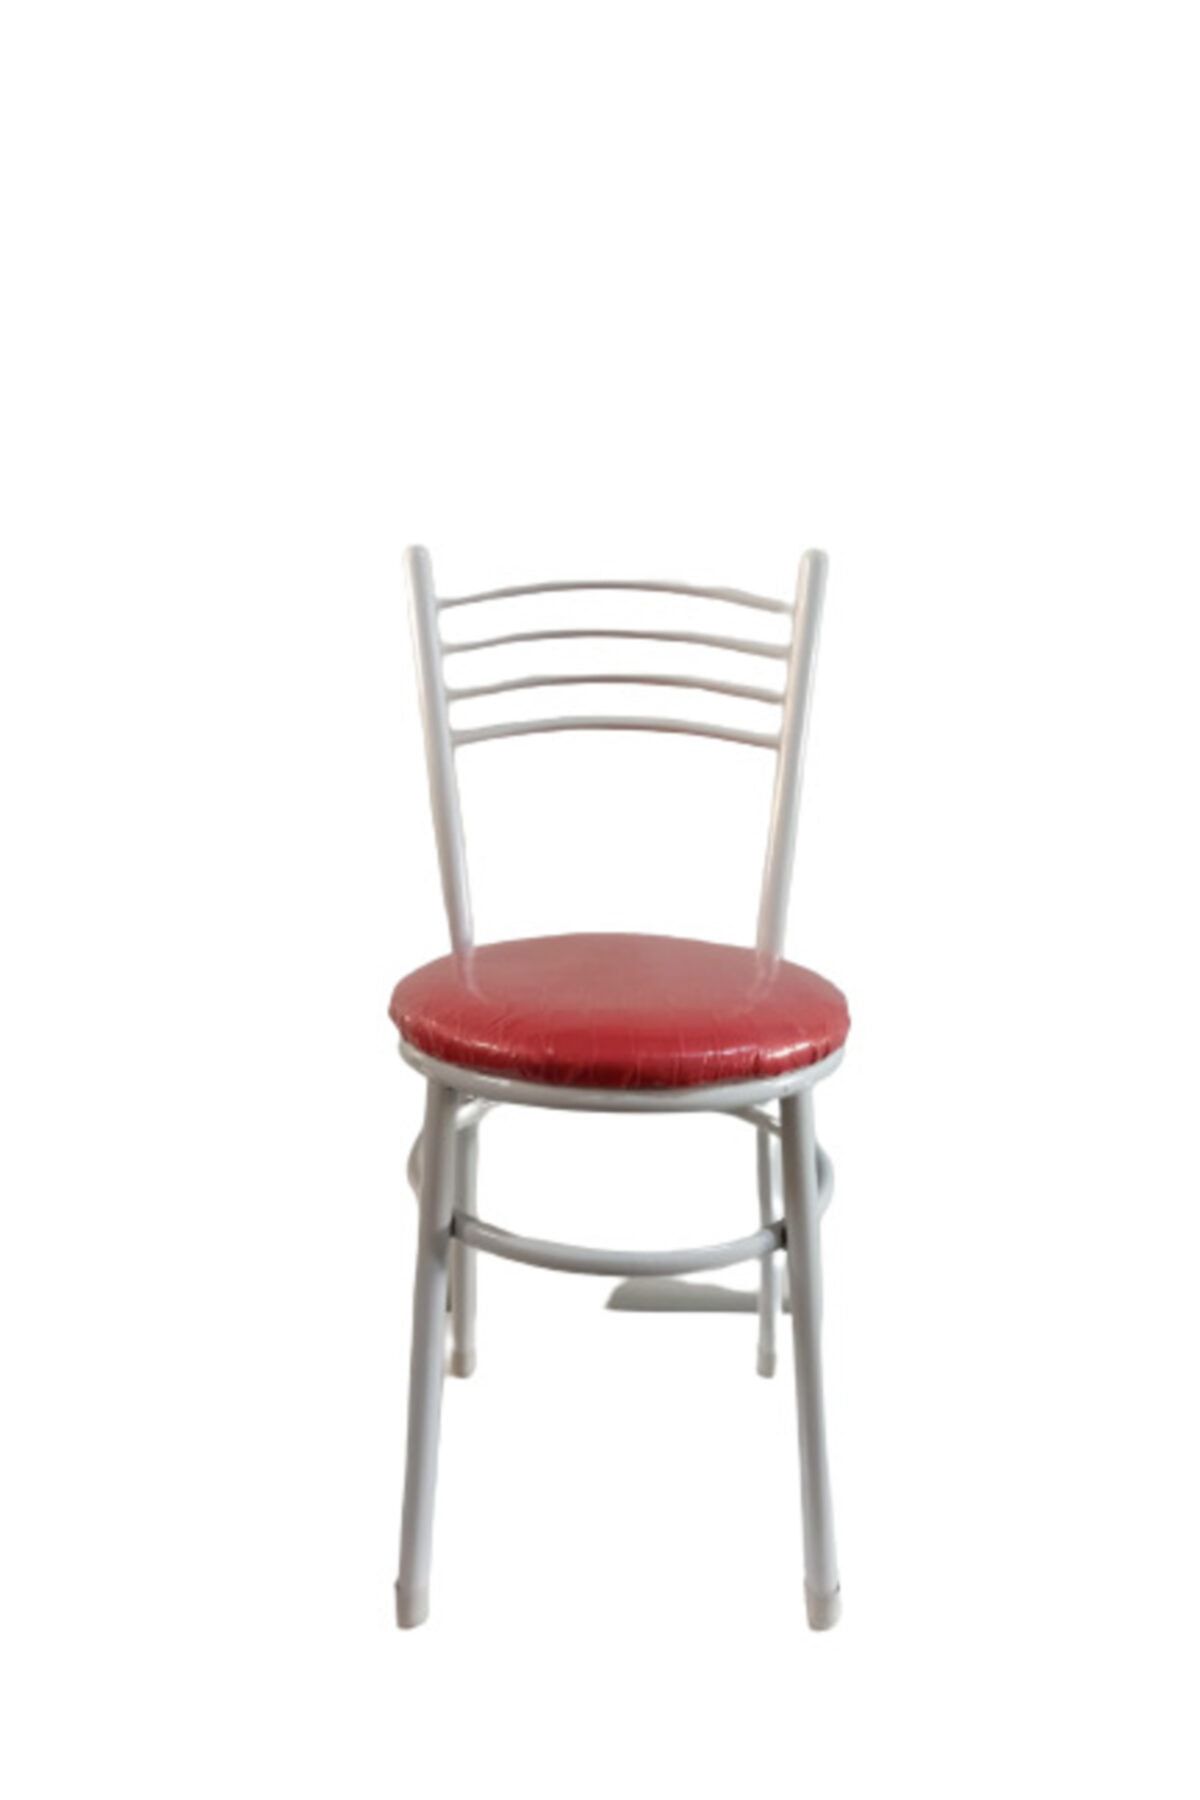 yılmaz masacılık Tatlı 5 Adet Kırmızı Mutfak Bahçe Sandalyesi